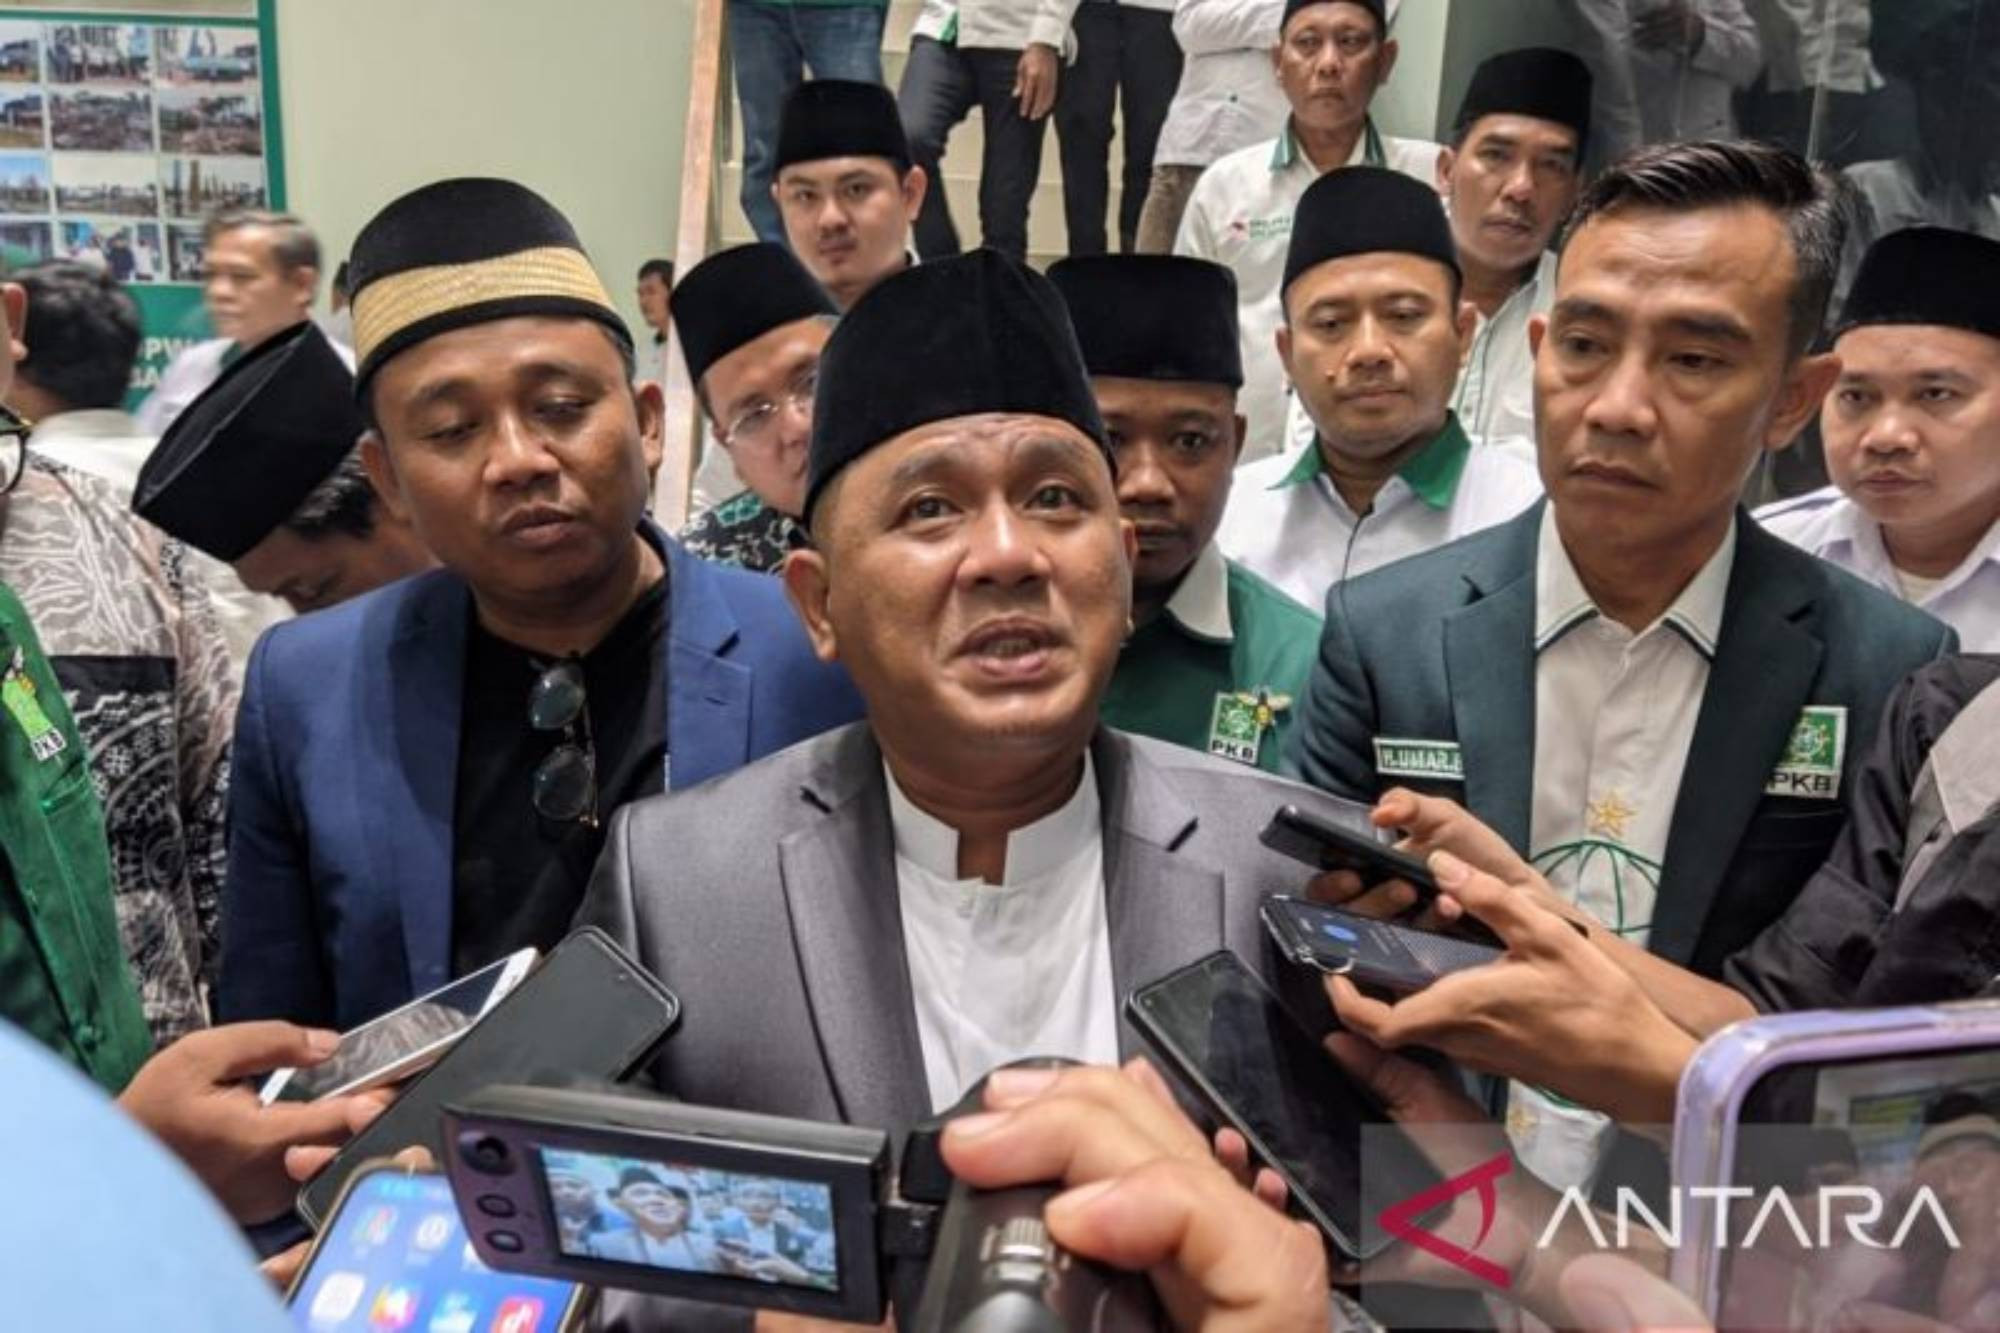 Maju di Pilgub Banten, Ahmad Syauqi Dapat Pesan dari Sang Ayah Ma’ruf Amin - JPNN.com Banten